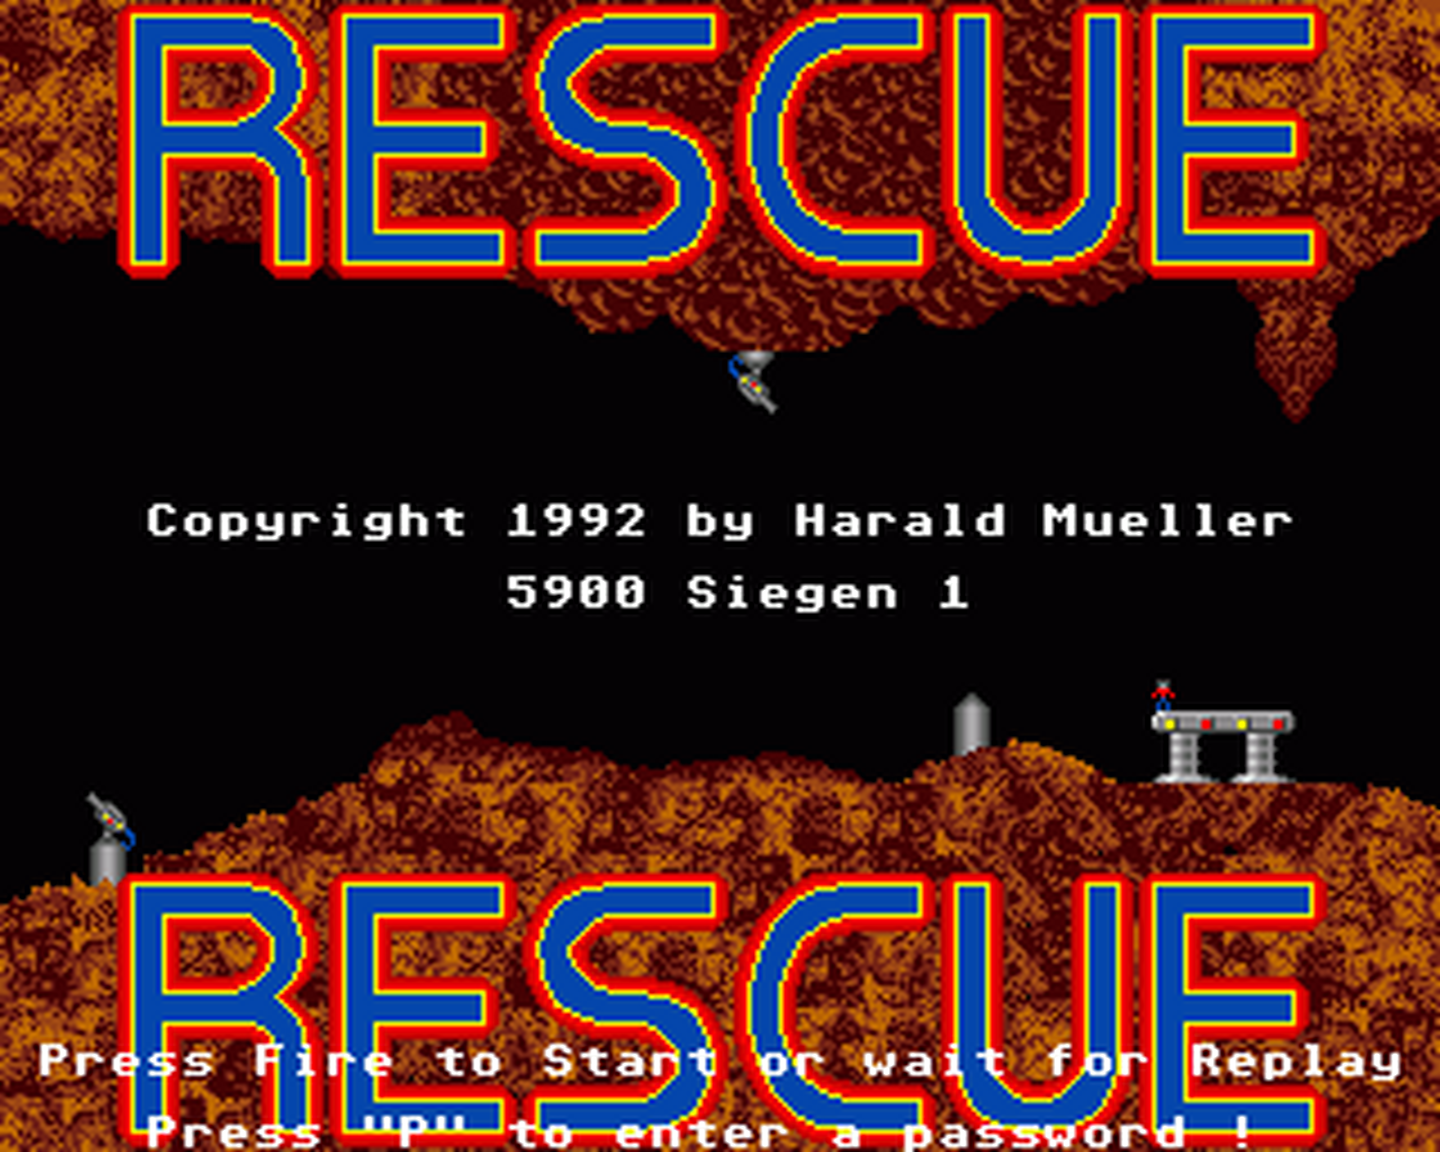 Amiga GameBase Rescue Schatztruhe 1992